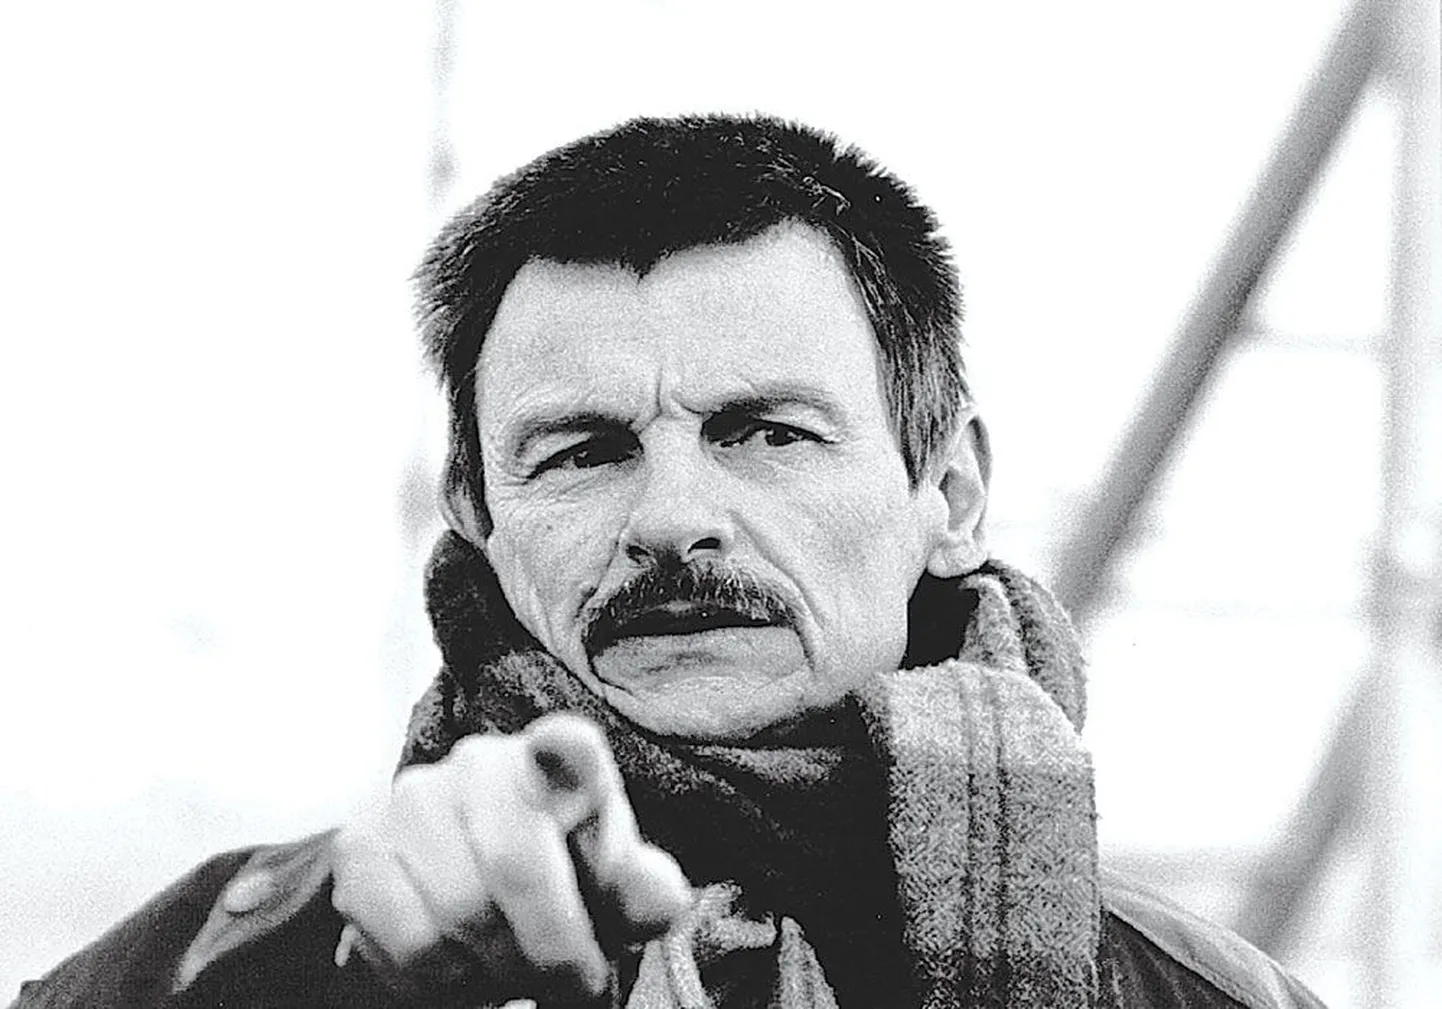 Не случайно «Встречи с Тарковским» проходят в Таллинне — великий режиссер, имя которого известно всему миру, снимал в Таллинне фильм «Сталкер».